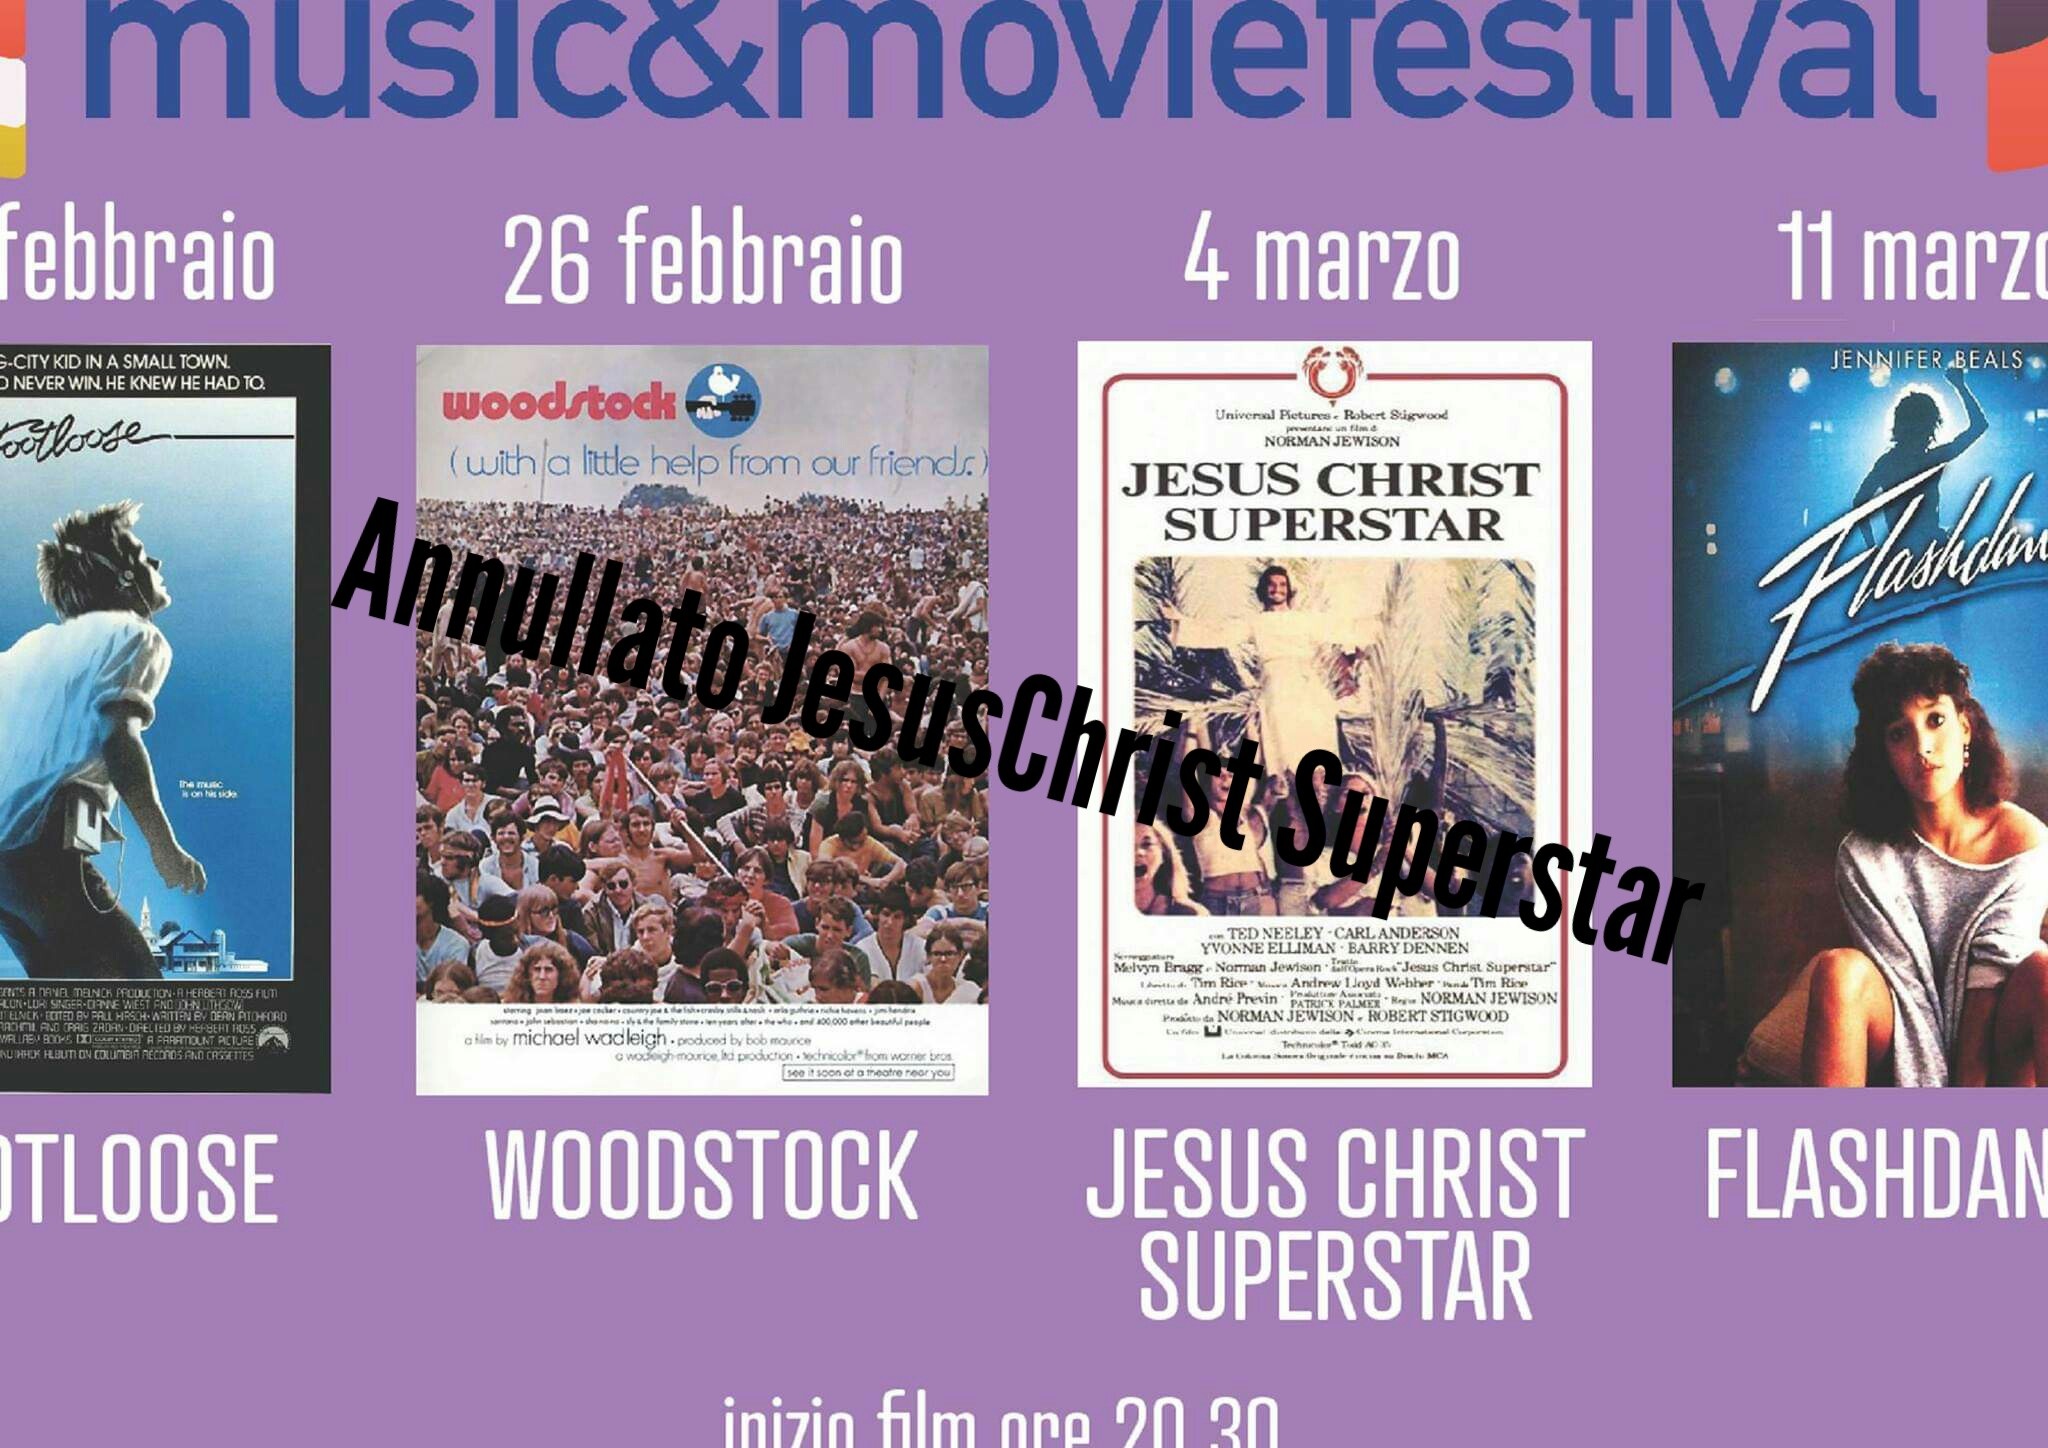 Castelfranco Music&Moviefestival modifiche alla programmazione